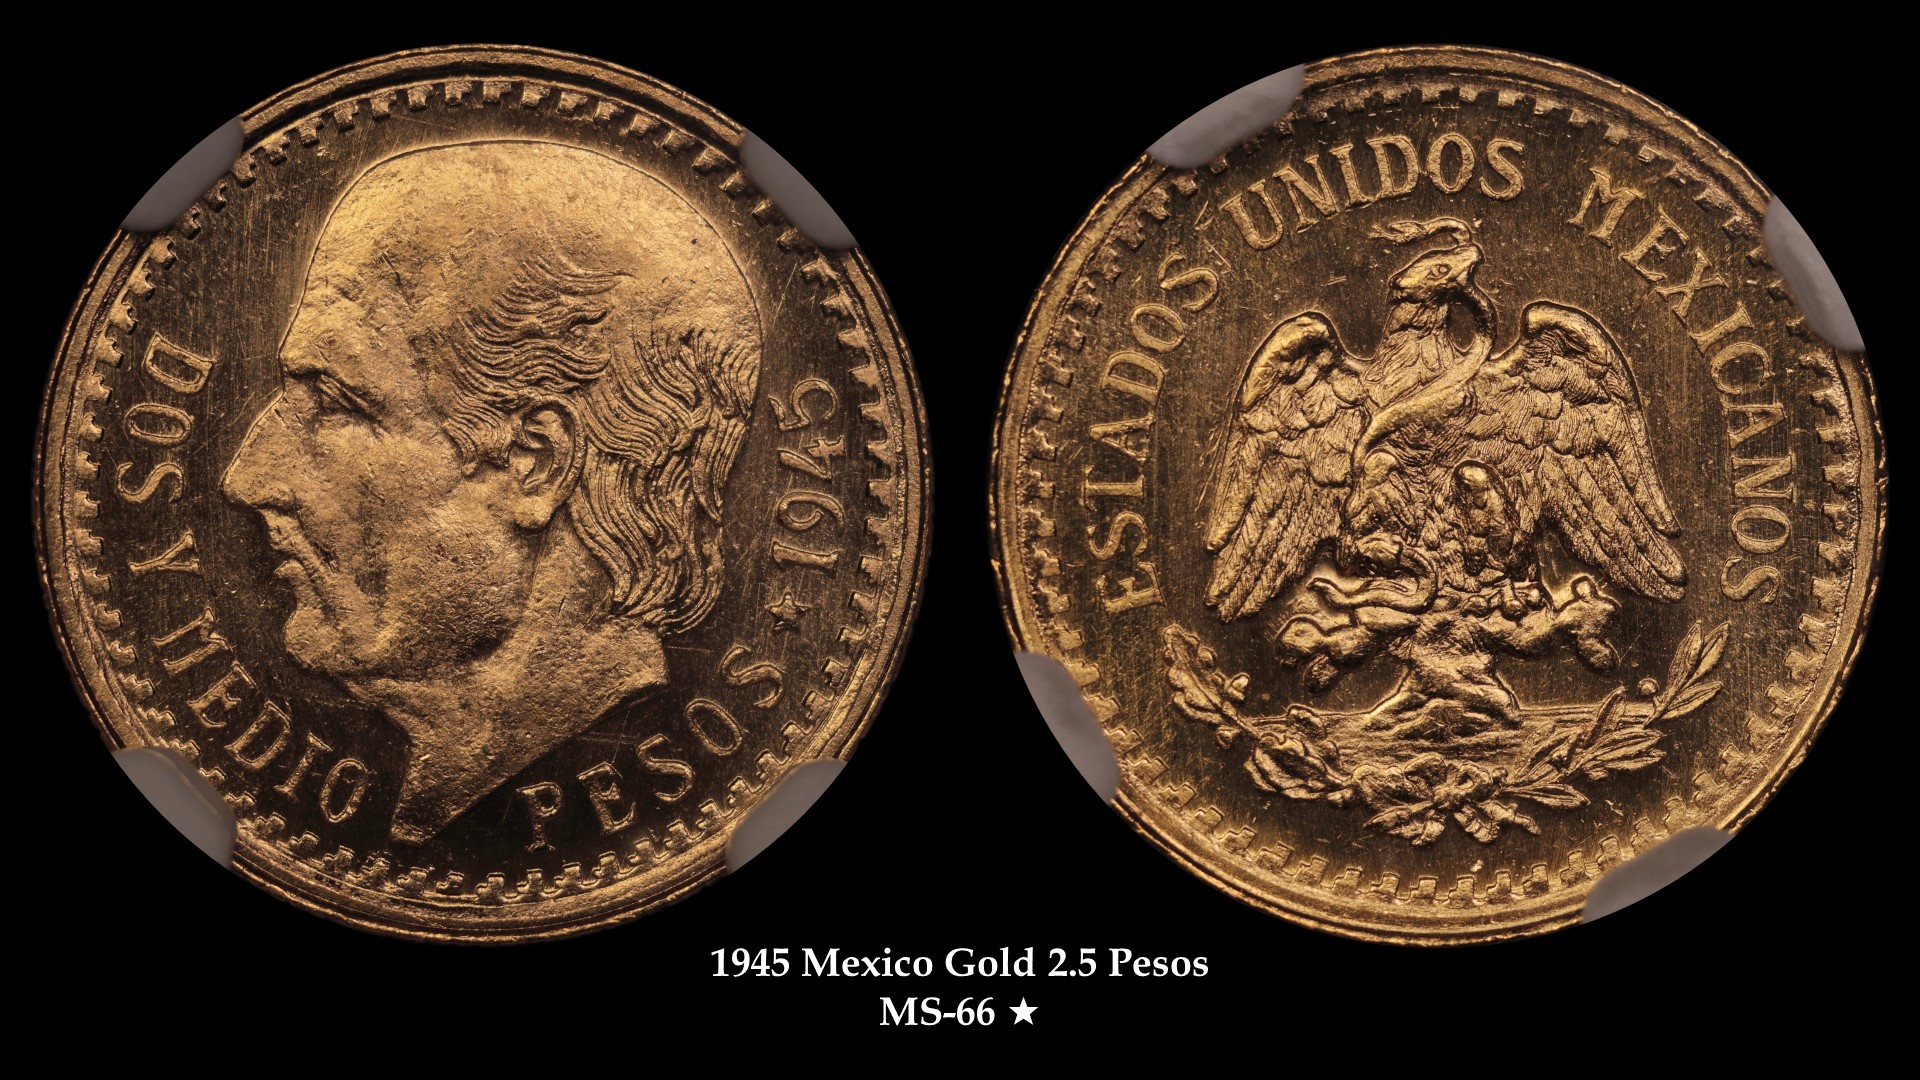 1945 Mexico Gold 2.5 Peso Restrike MS-66 Star 2100351002.jpg